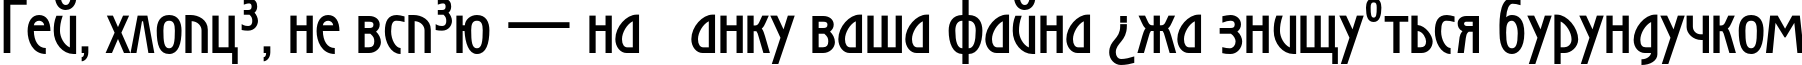 Пример написания шрифтом SecessionLight Bold текста на украинском